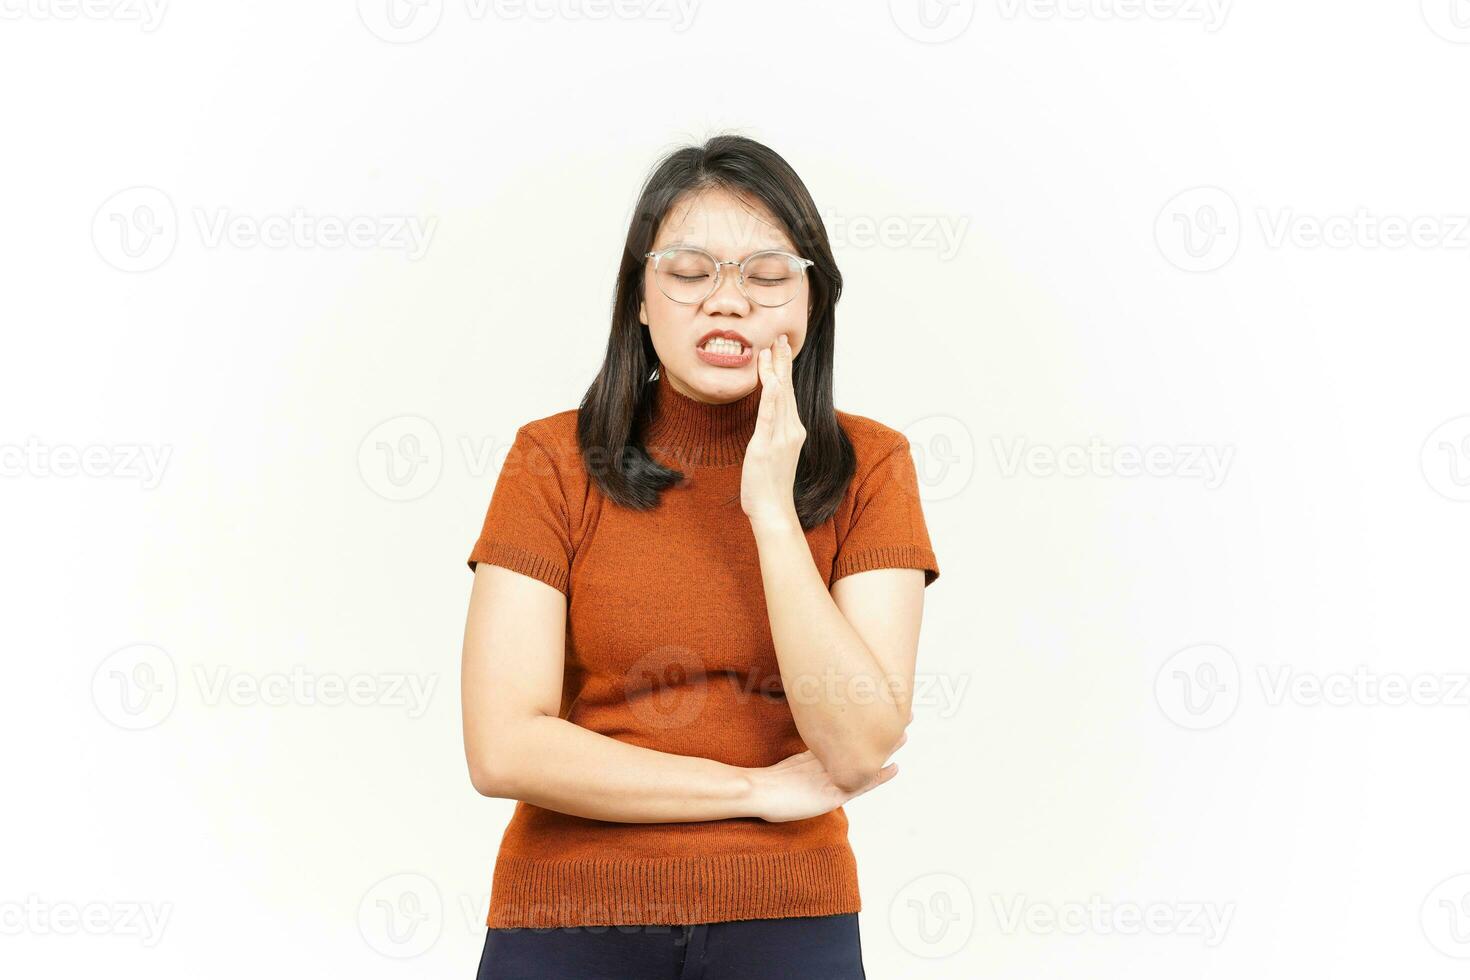 leidende Zahnschmerzengeste der schönen asiatischen Frau lokalisiert auf weißem Hintergrund foto